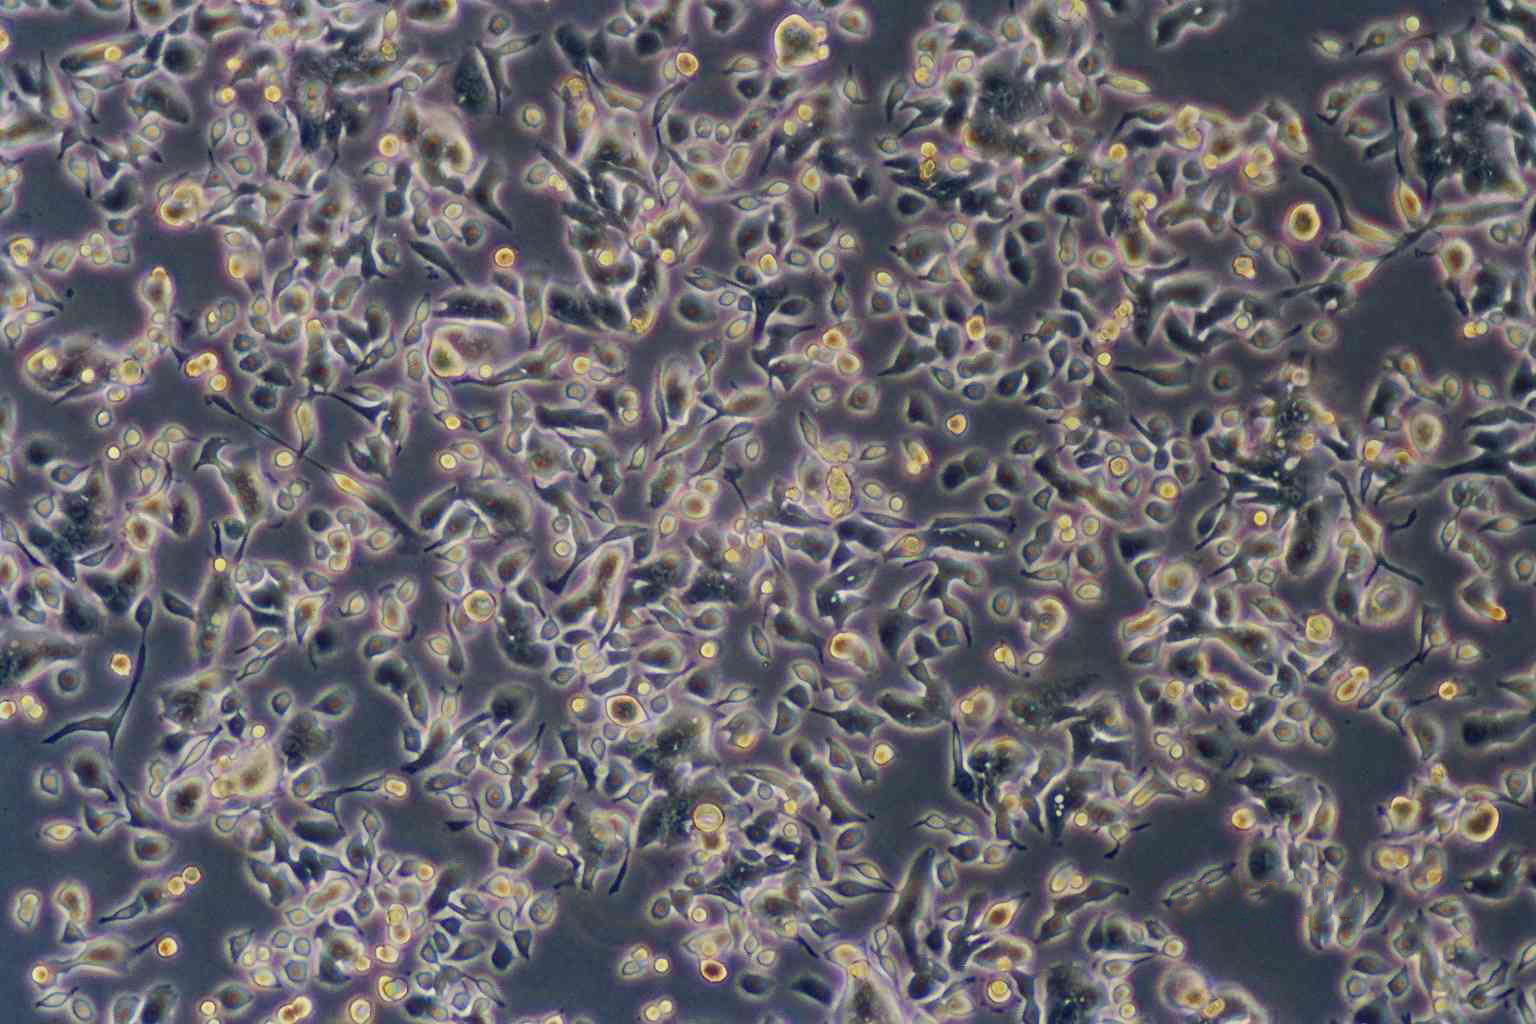 AAV-293:腺病毒转化的人胚肾复苏细胞(提供STR鉴定图谱)